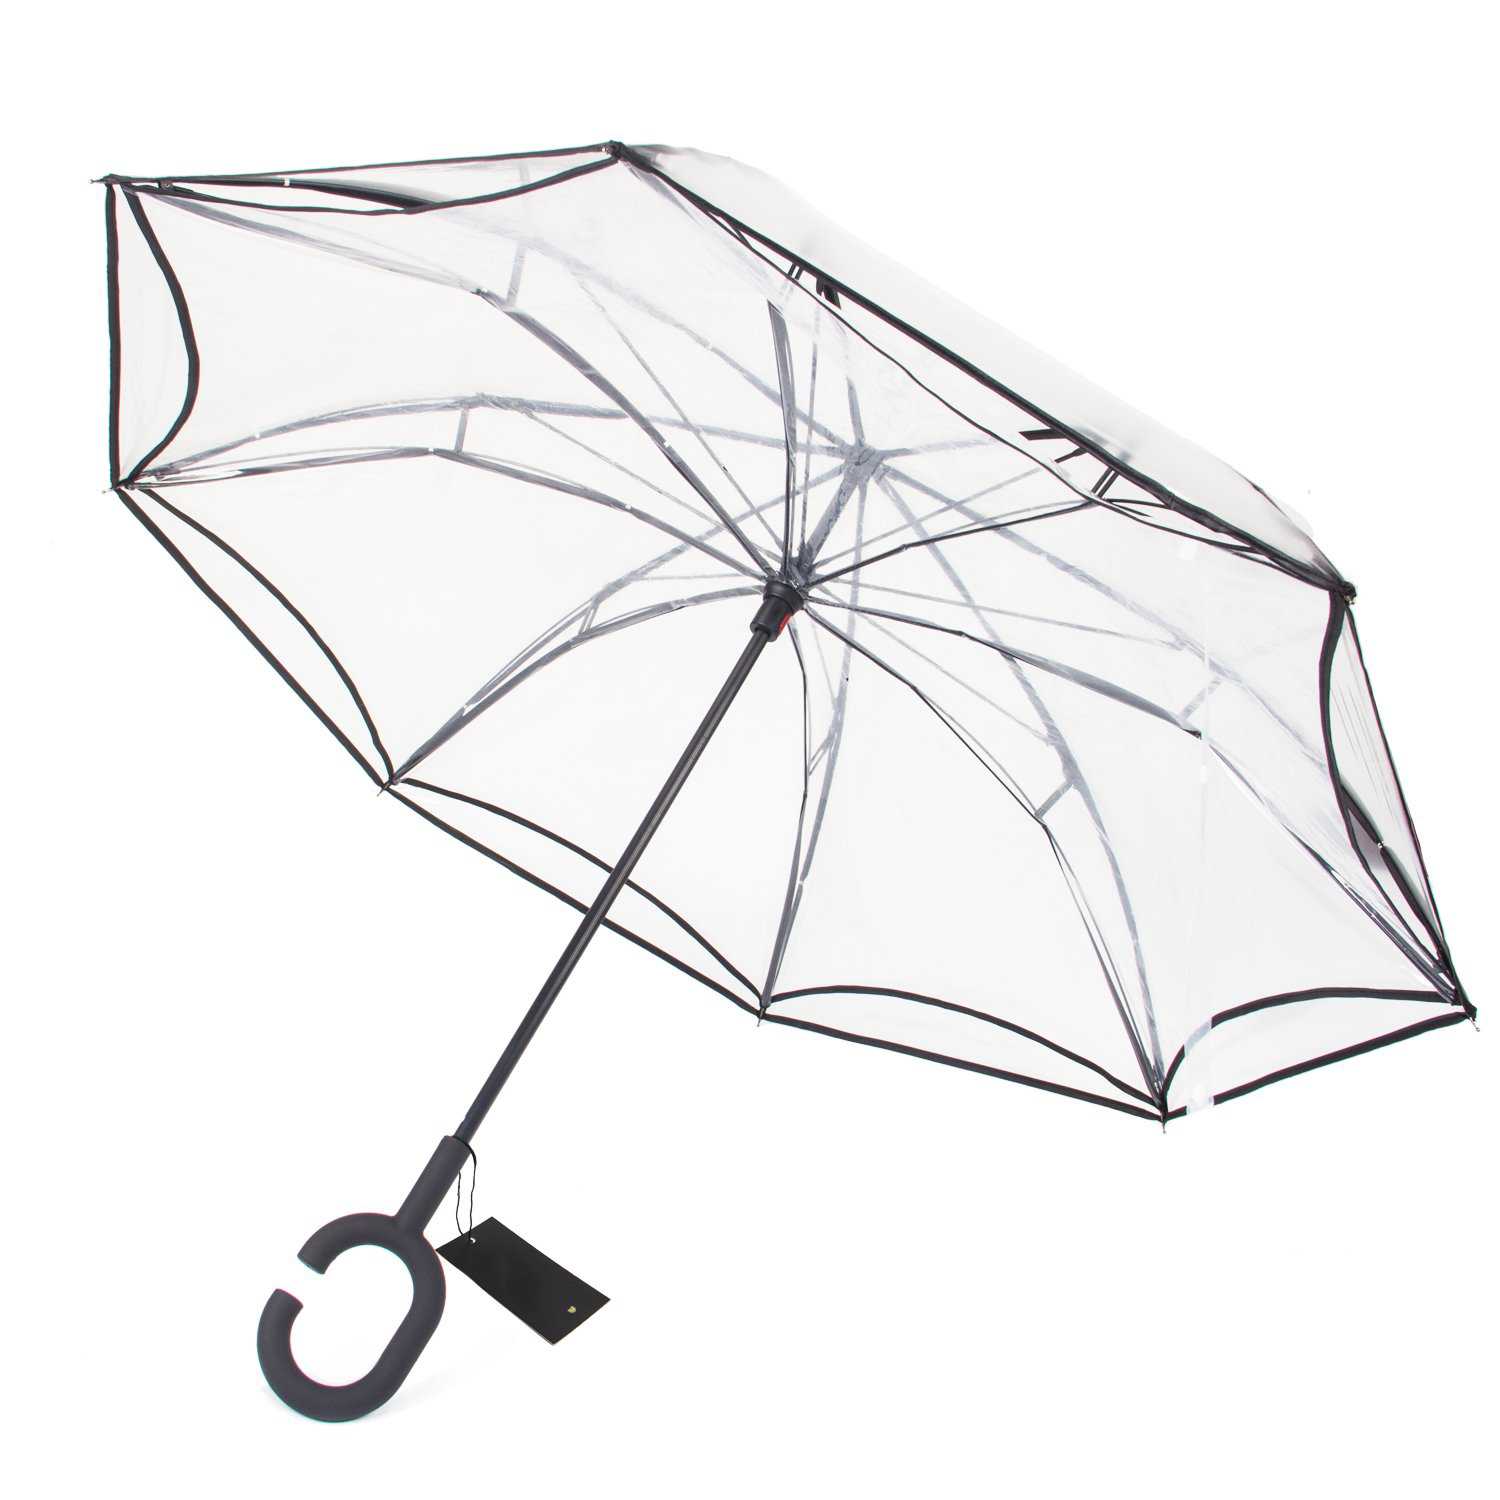 جودة عالية طبقة مزدوجة مقلوب سيارات المطر في الهواء الطلق POE عكس مظلة مع مقبض على شكل C